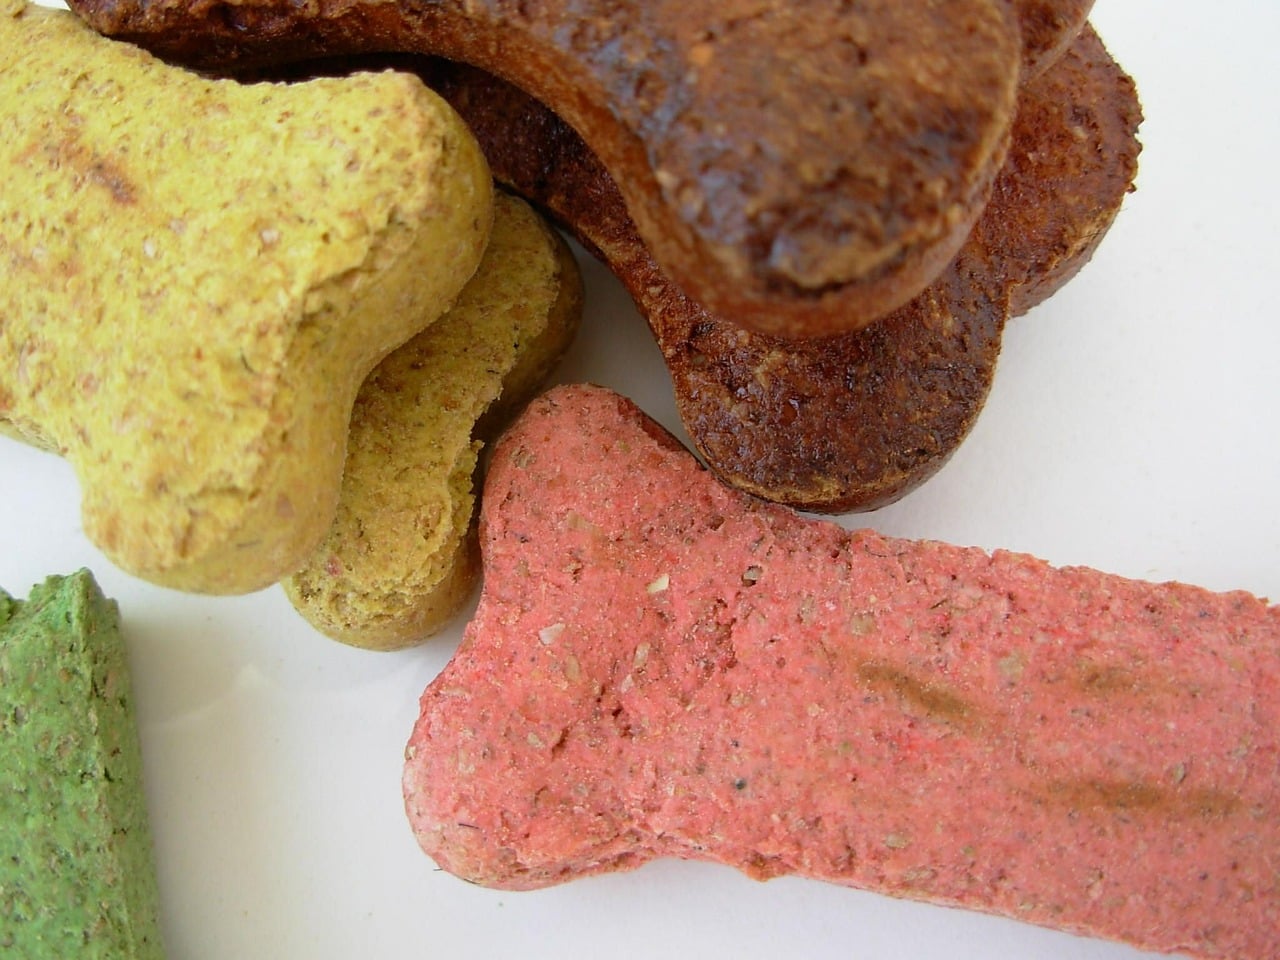 Is glycerine in hondenvoer en snacks slecht voor honden?